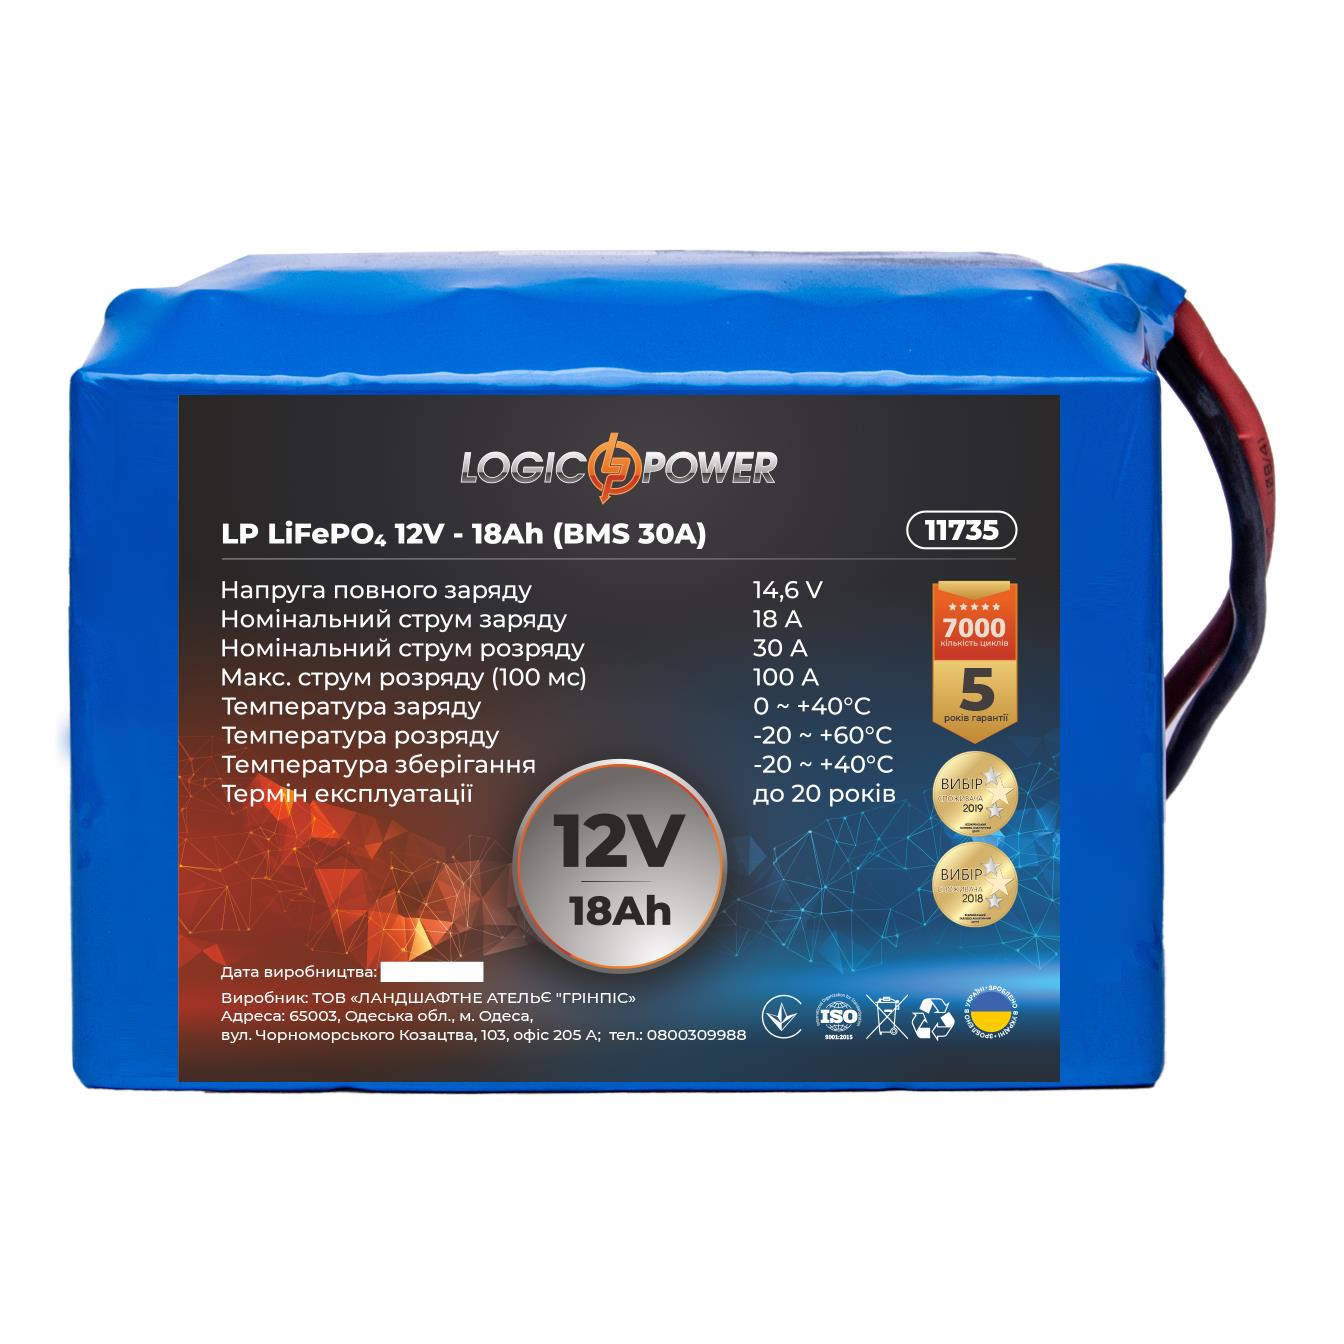 Аккумулятор литий-железо-фосфатный LogicPower LP LiFePO4 12V - 18 Ah (BMS 30A) (11735) в интернет-магазине, главное фото